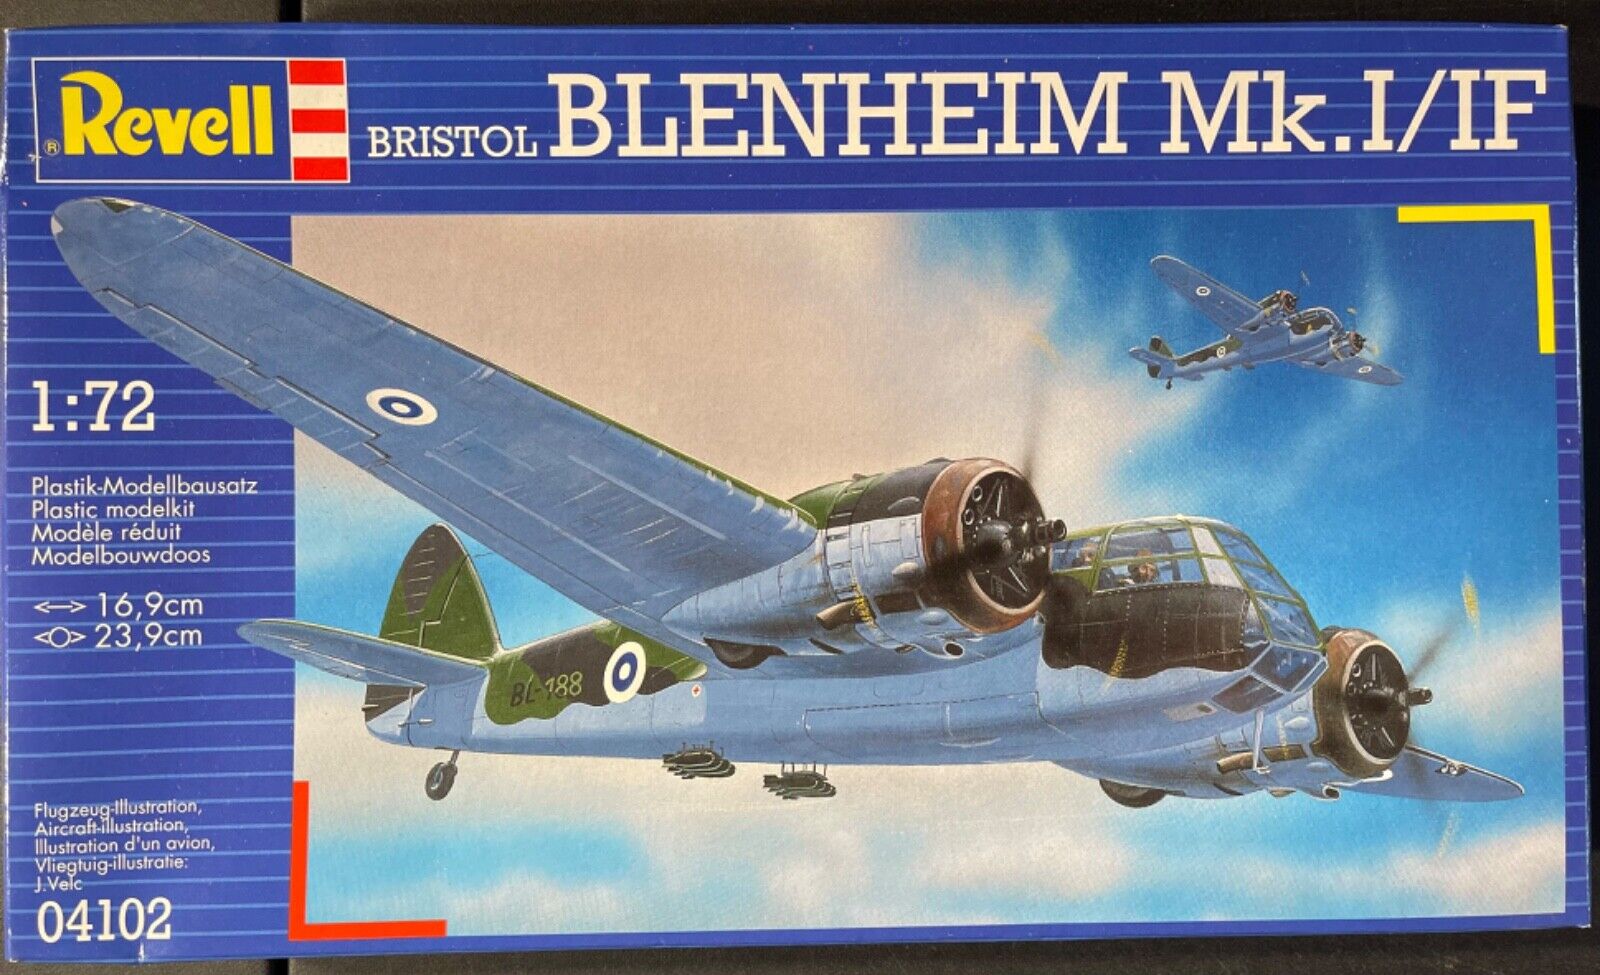 BLENHEIM Mk.1/1f 1/72 revell - 04102